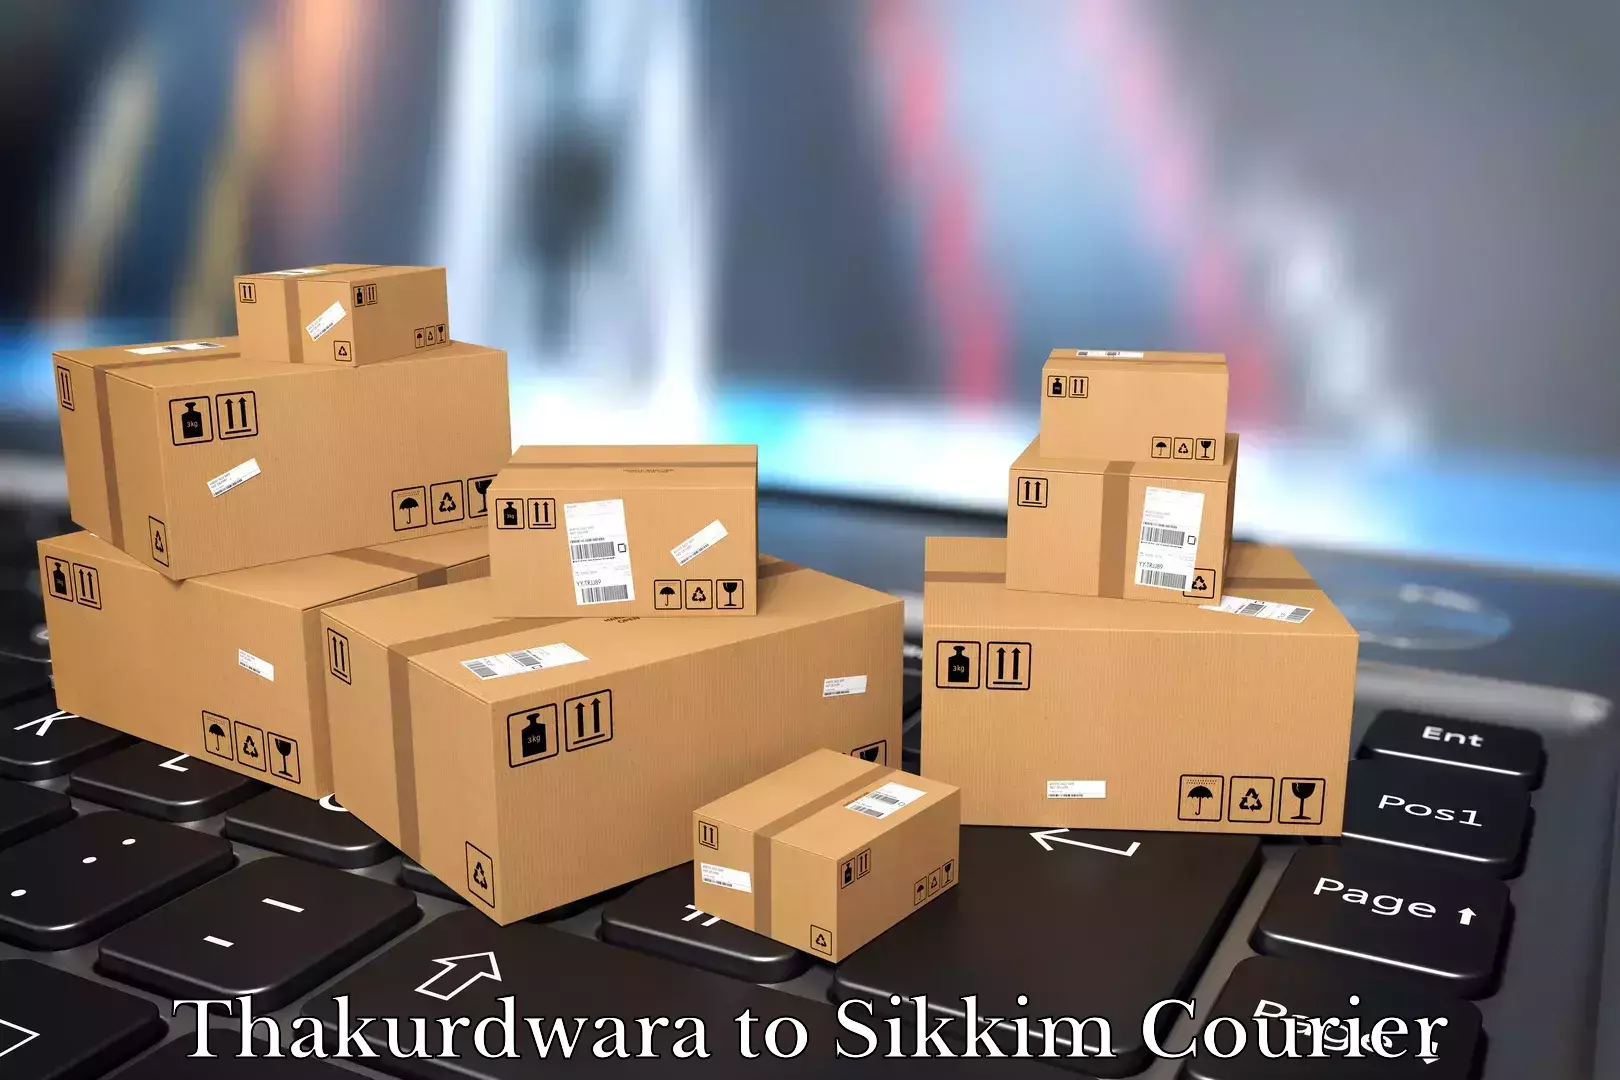 Furniture moving experts Thakurdwara to North Sikkim